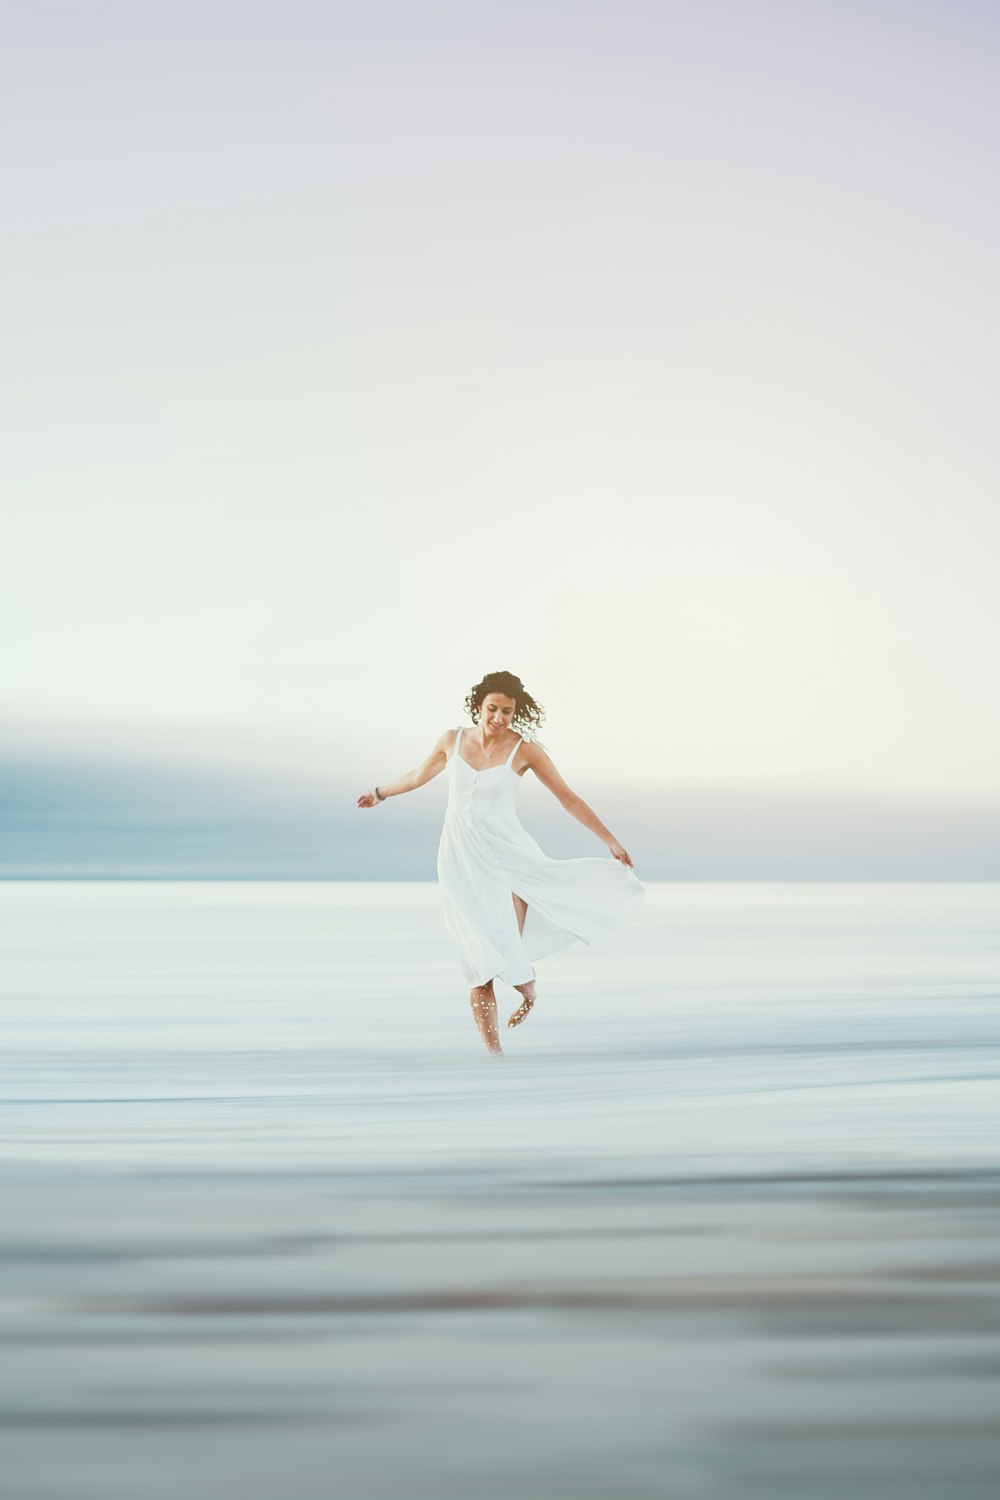 Eine Frau im weißen Kleid springt in die Luft